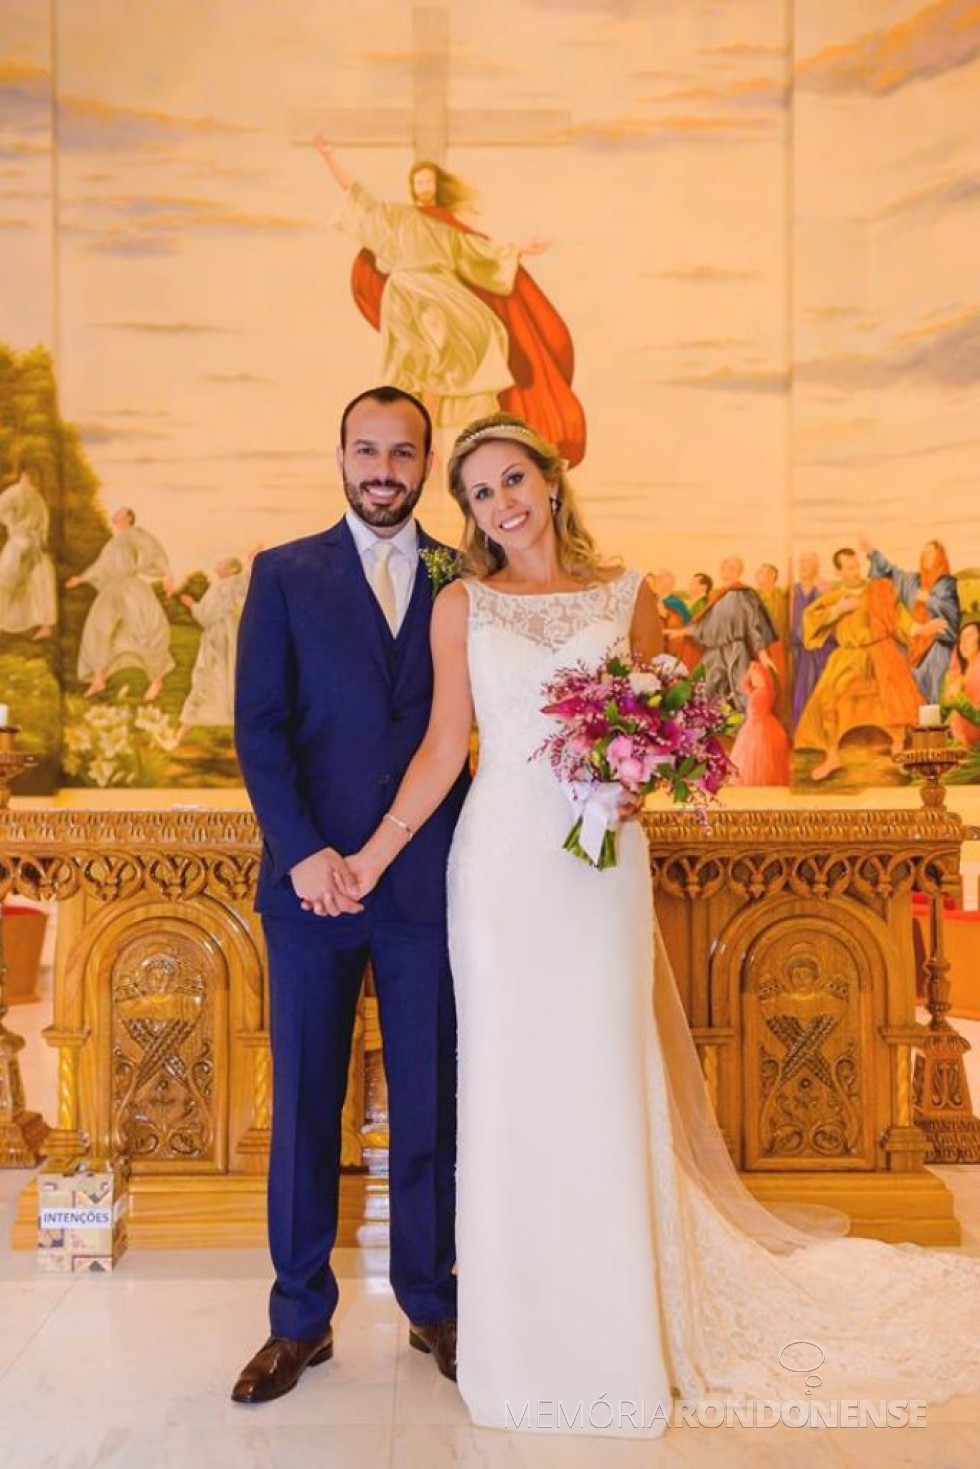 || Casamento da rondonense Andressa Gomes e Gabriel Servidão, na Igreja Menino Deus, em Toledo. 
Crédito: FotoCity Digital - Marechal Cândido Rondon - FOTO 22 - 